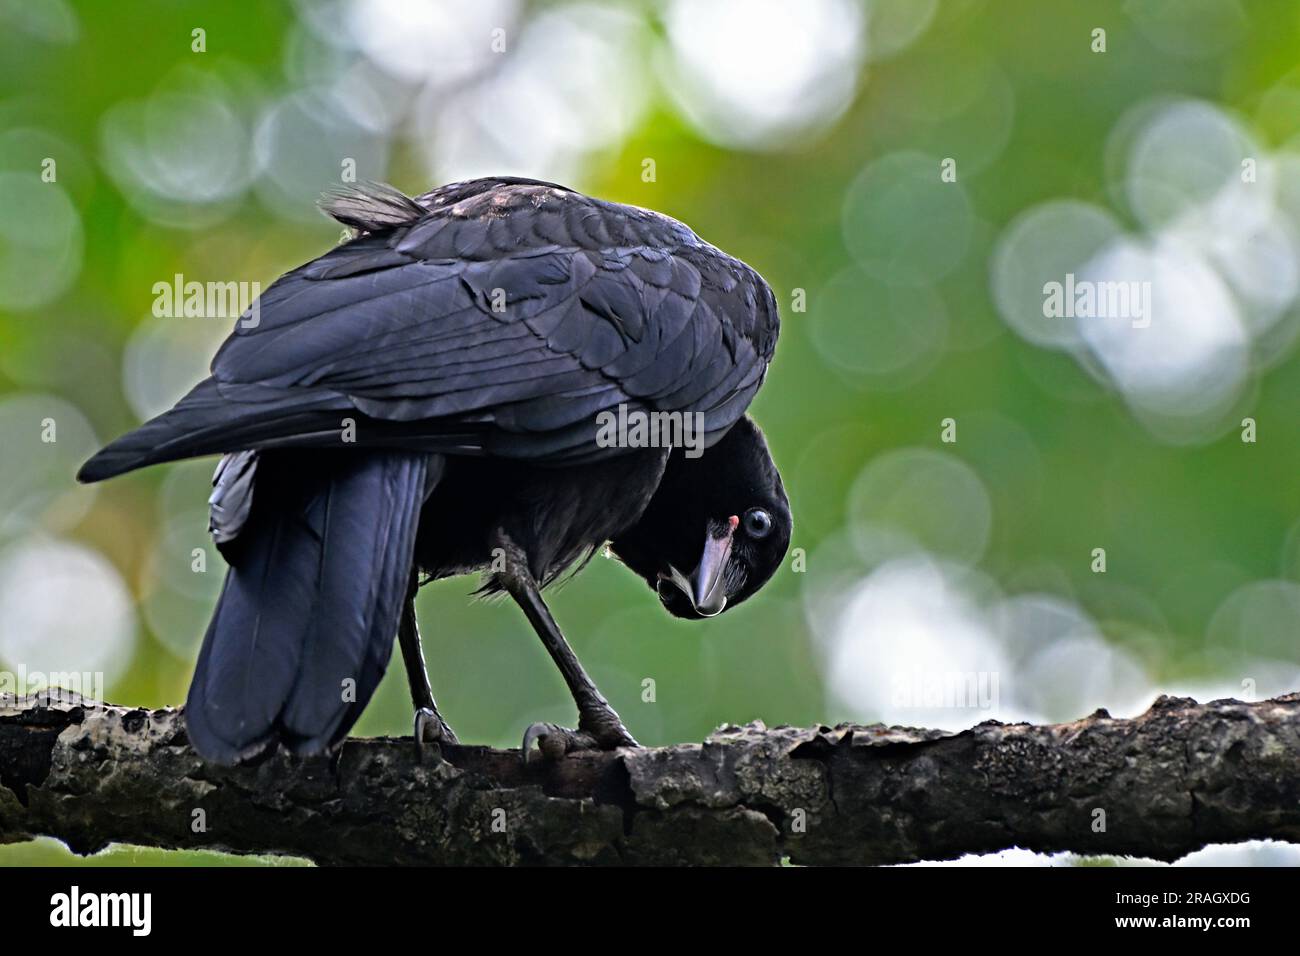 Vue arrière rapprochée d'un jeune corbeau américain 'Corvus brachynchos', avec une expression amusante sur son visage. Banque D'Images